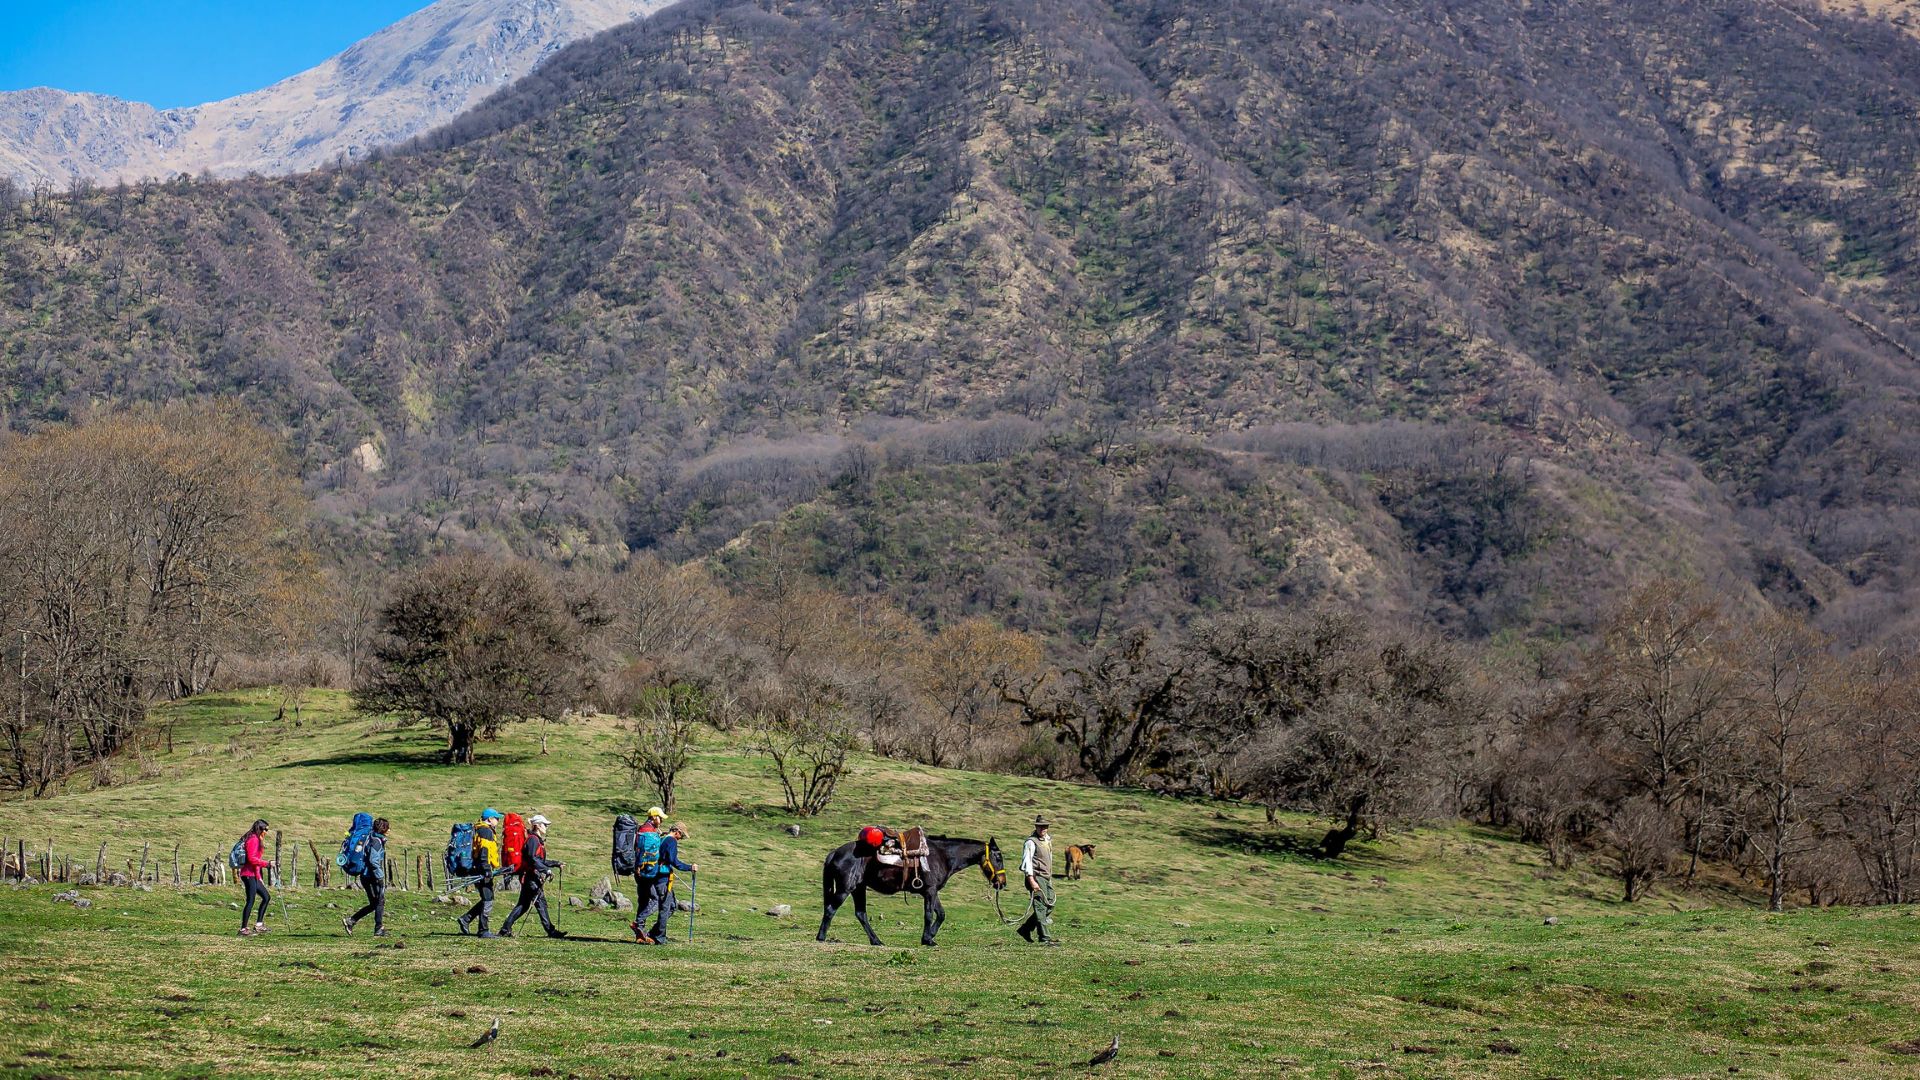 El trekking a la Laguna del Tesoro es un sendero de dificultad media/alta de 24 km ida y vuelta (Ministerio de Turismo y Deportes)